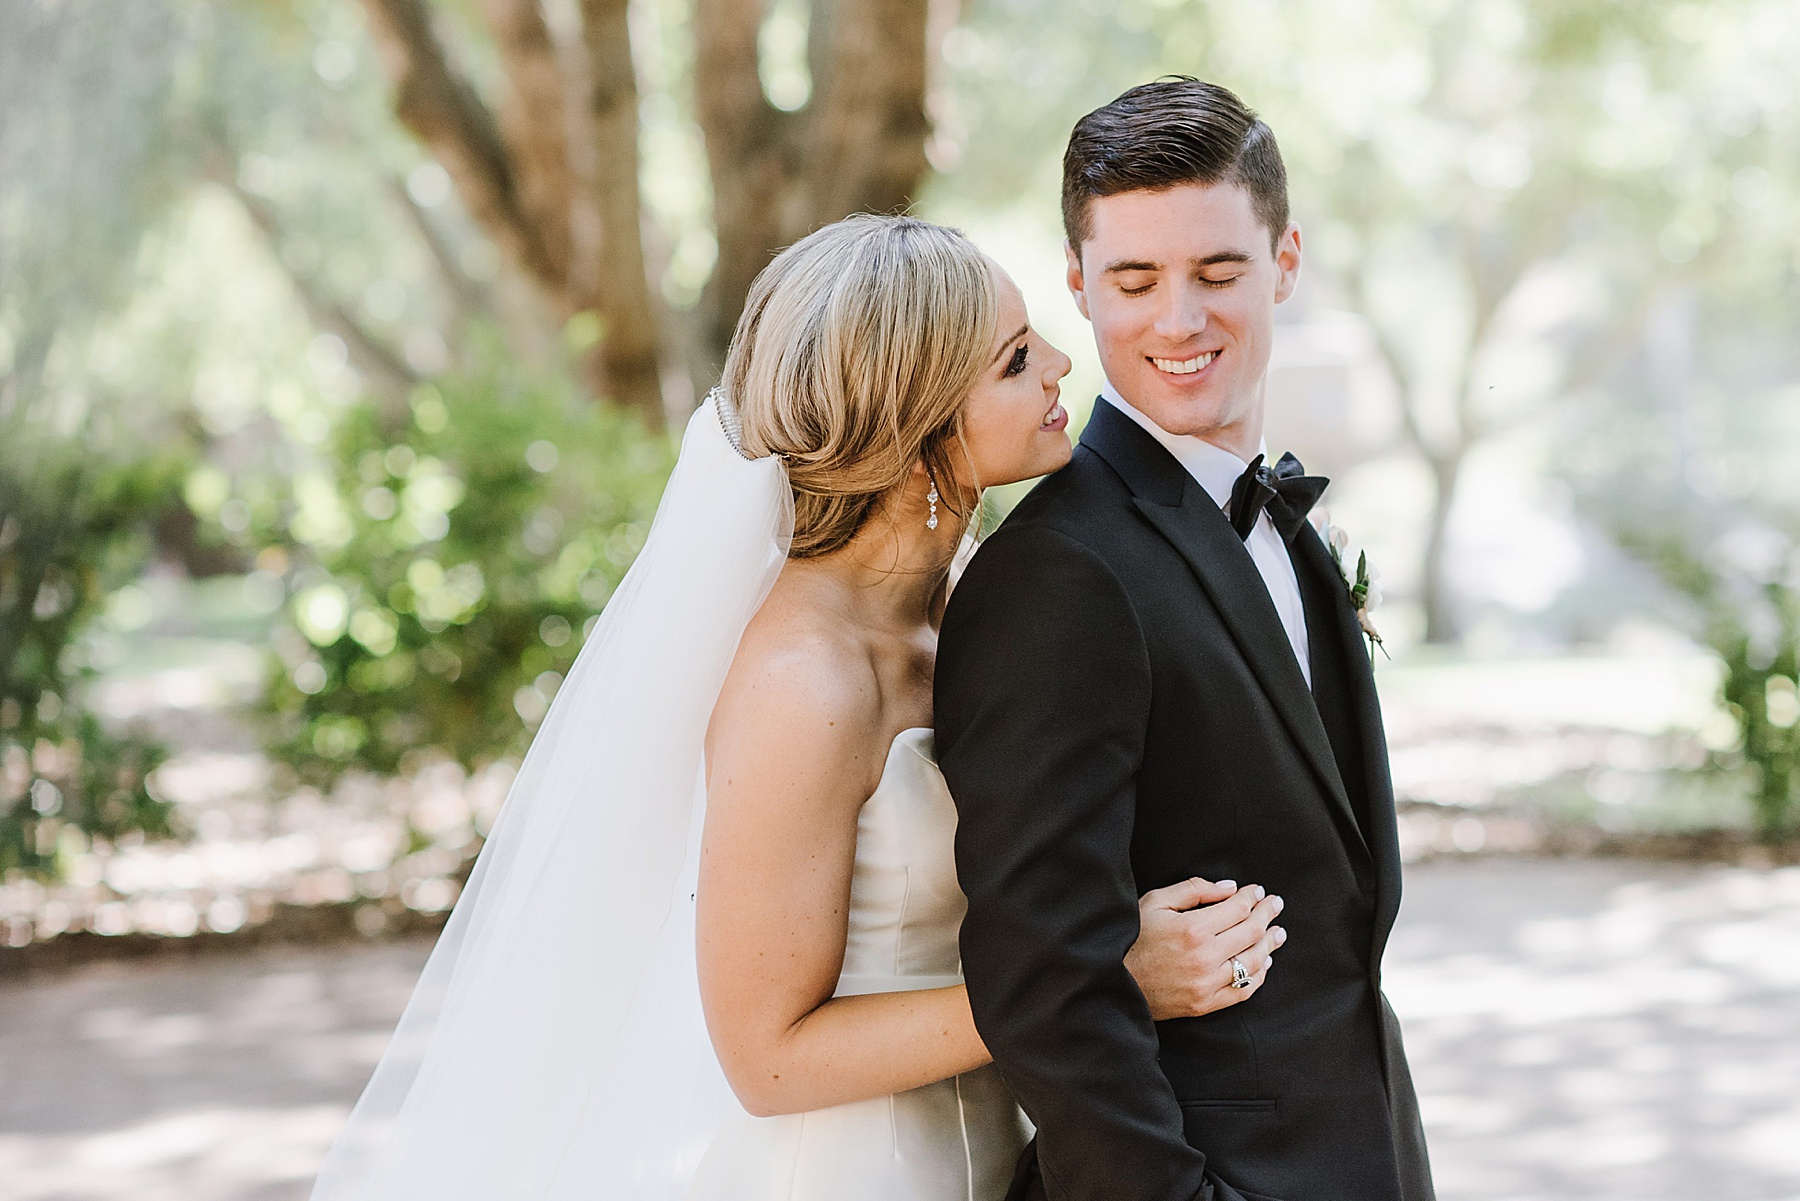 How to pick a wedding photographer | San Luis Obispo Photographer